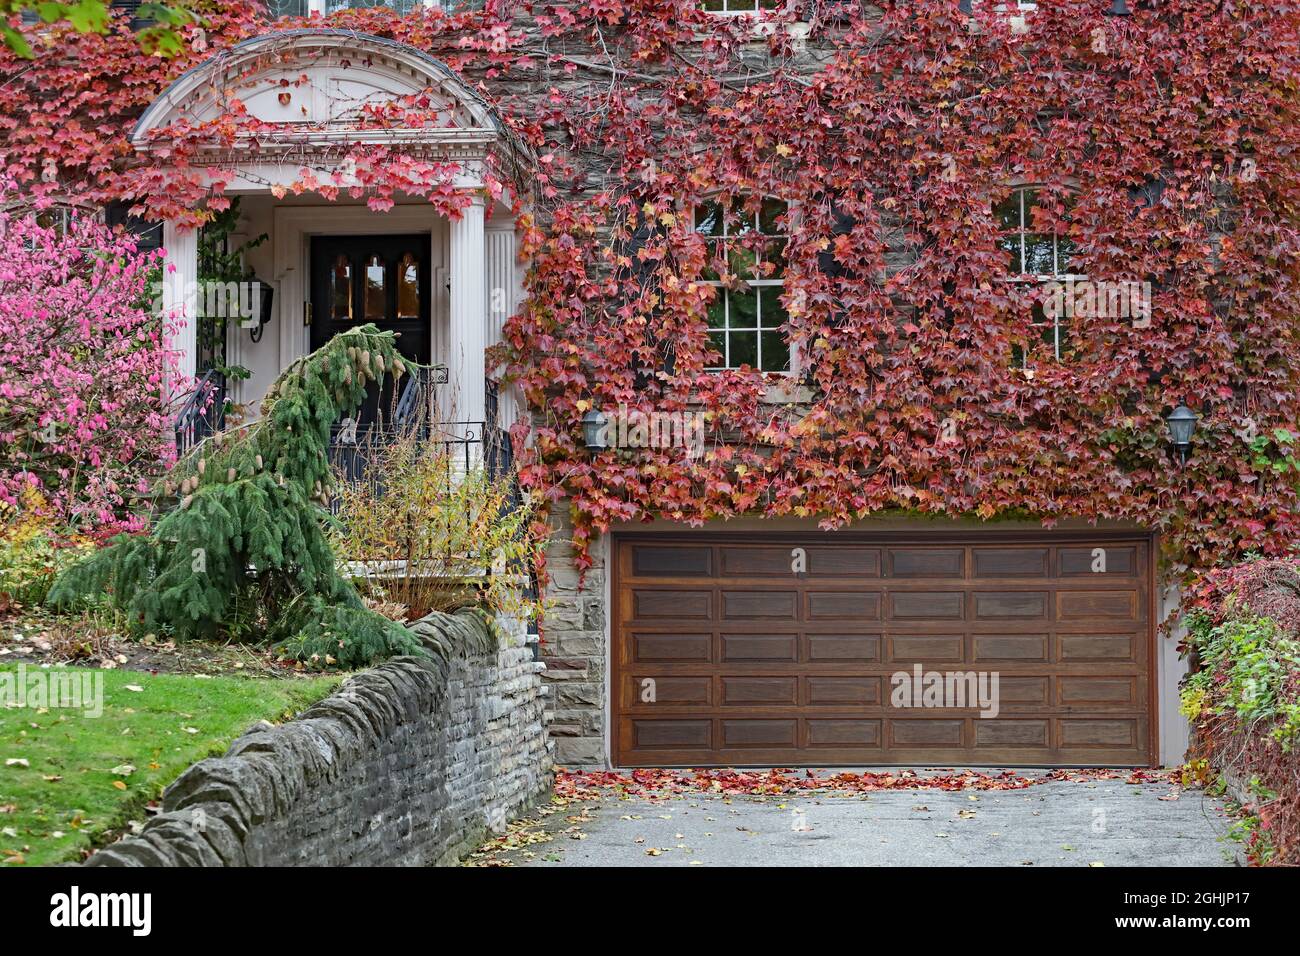 Façade de la vieille maison en pierre recouverte de vignes changeant de couleur en automne Banque D'Images